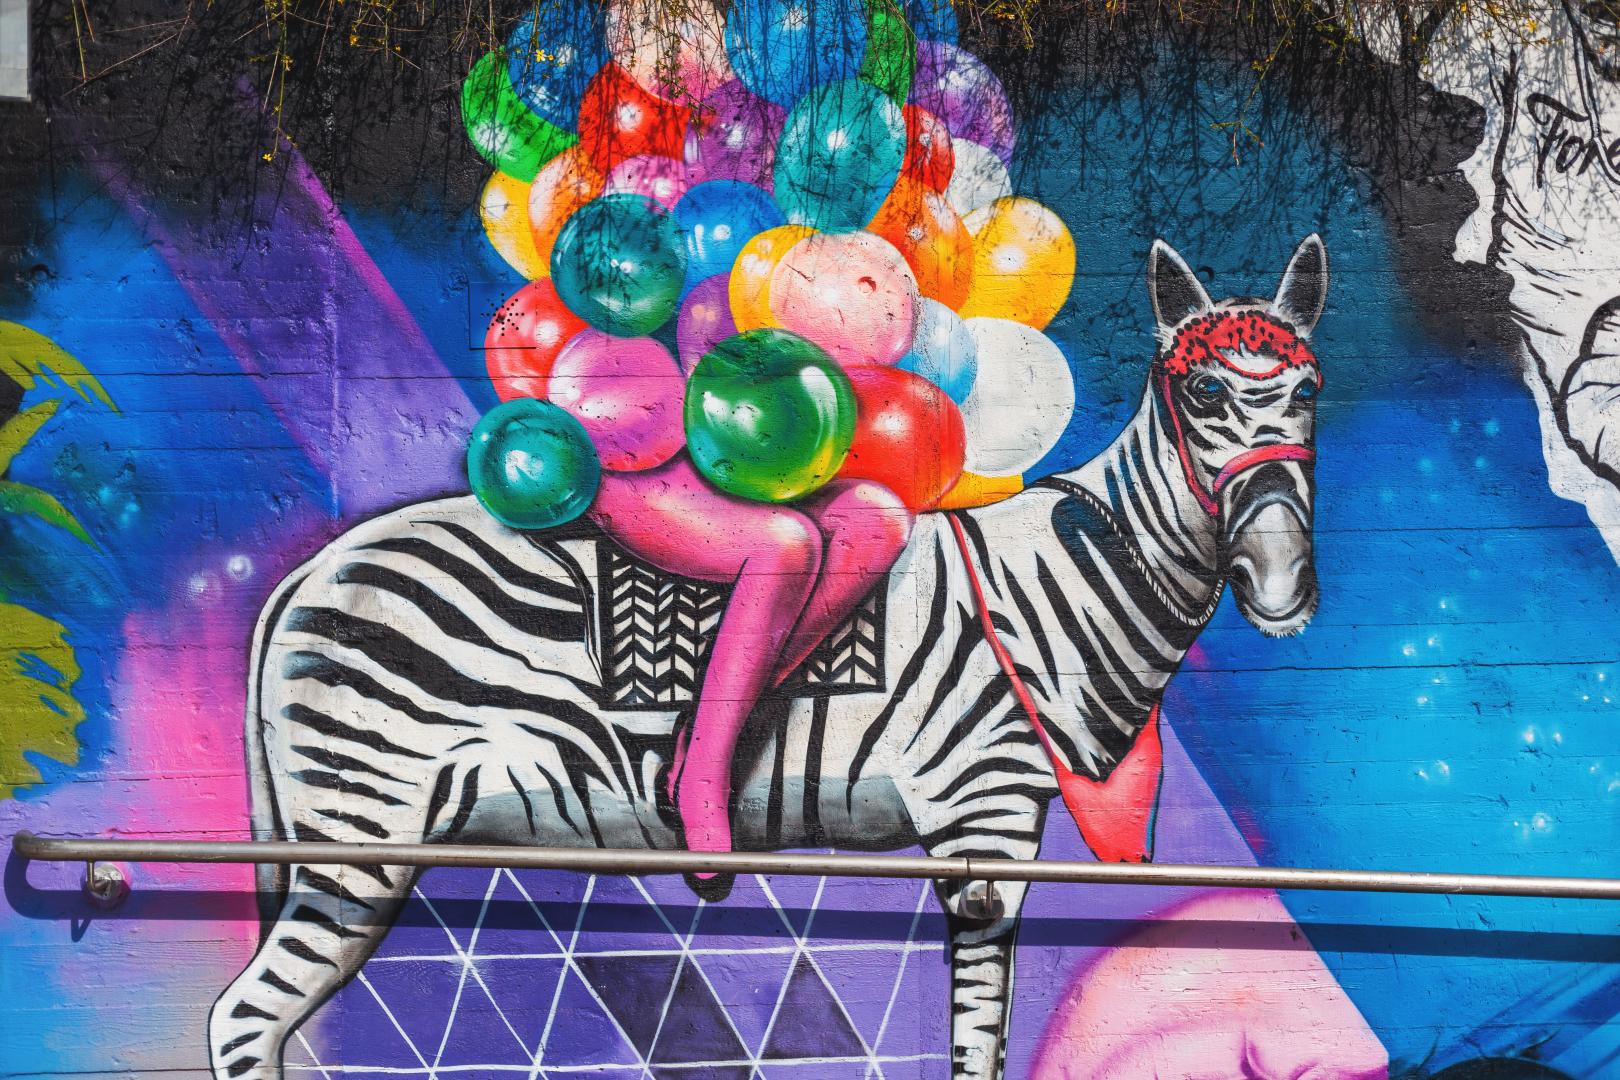 Buntes Graffiti im Stadtbild: Eine Person auf einem Zebra, die Arme übervoll mit bunten Luftballons.